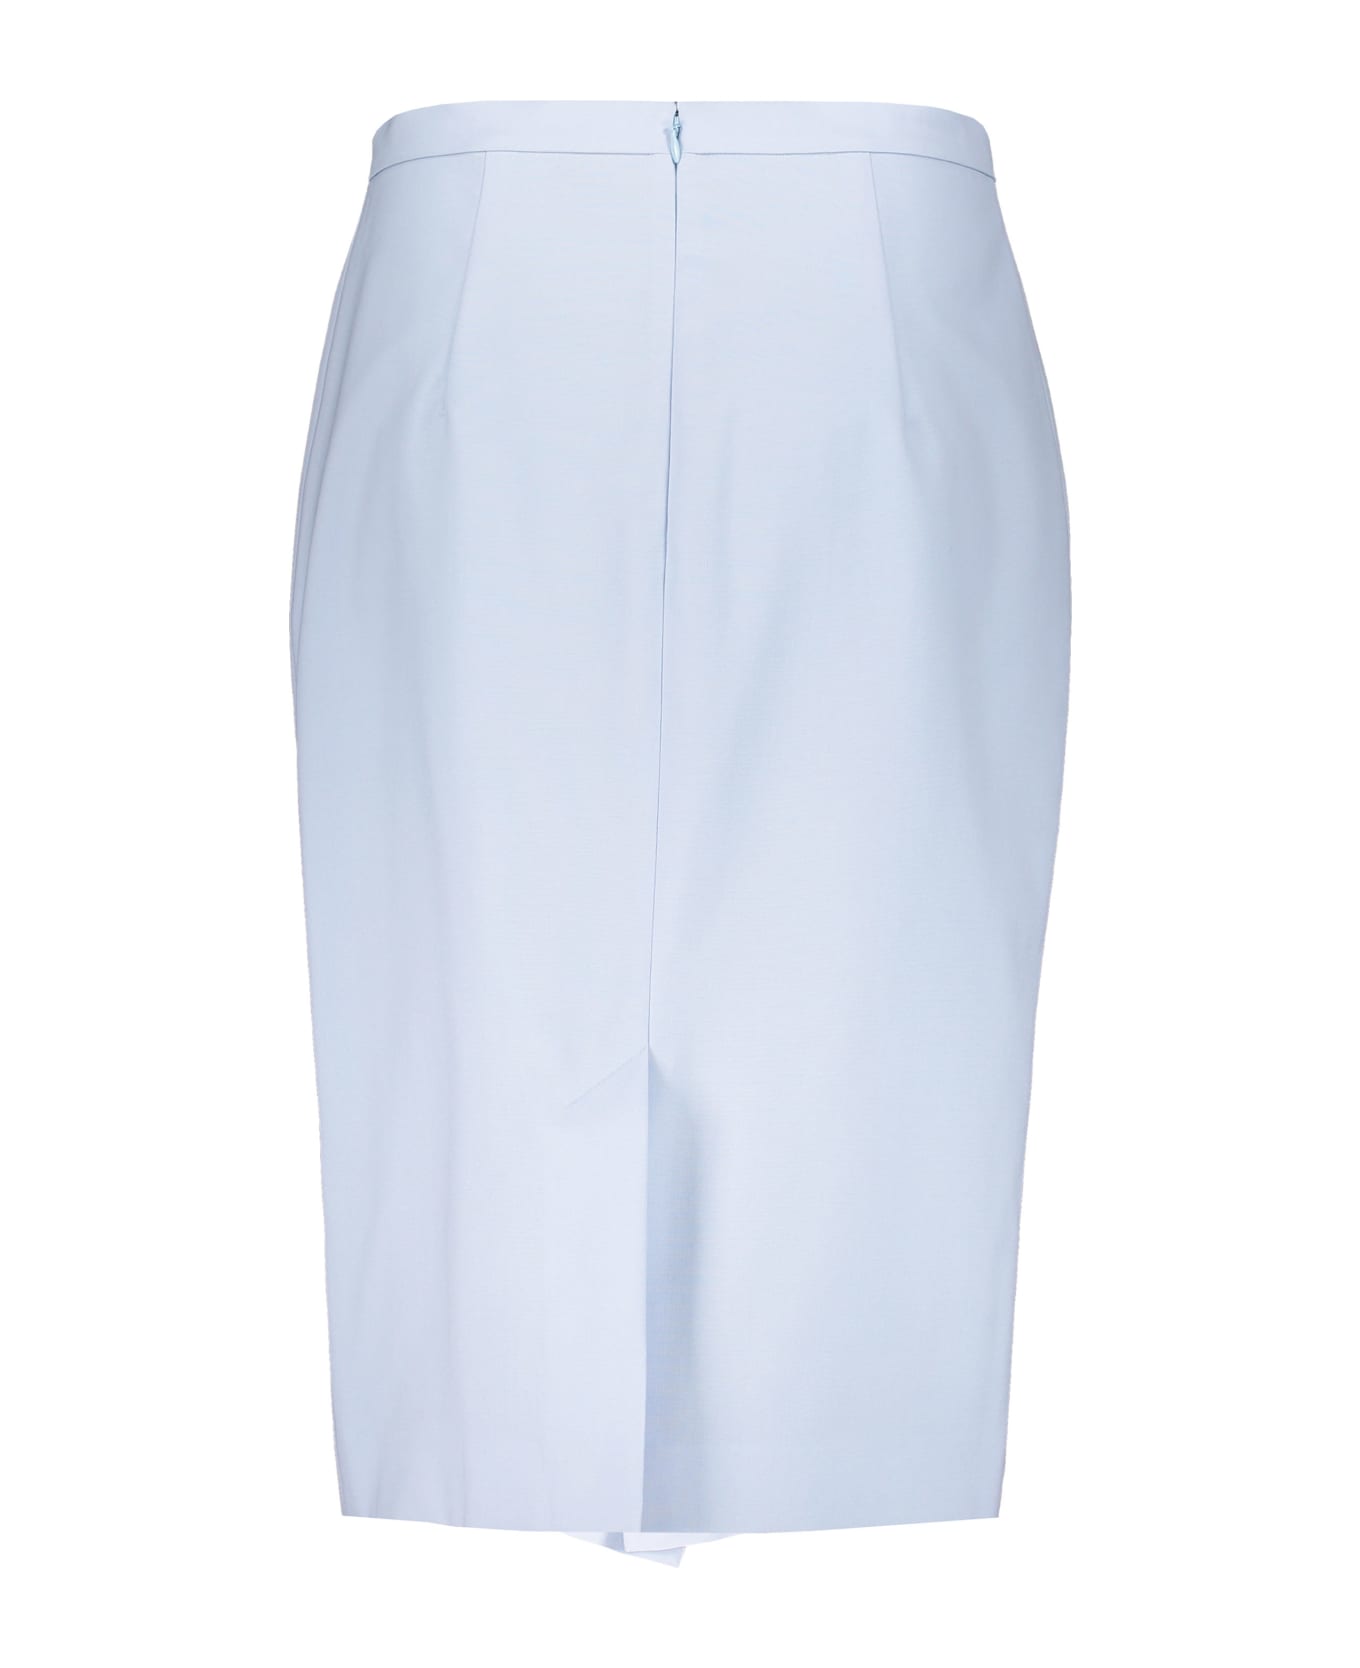 Burberry Midi Skirt - Light Blue スカート